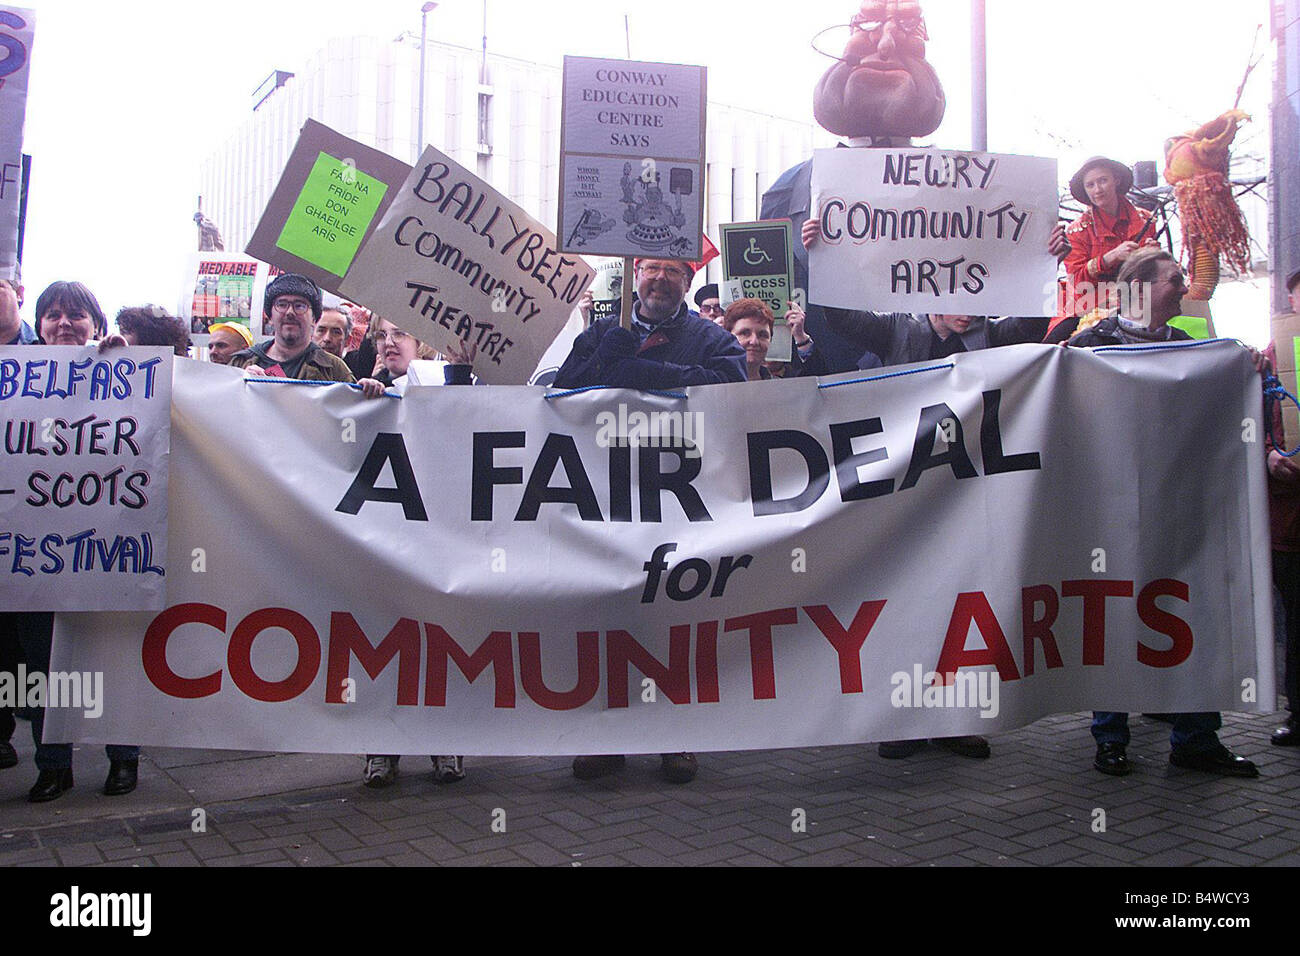 Community Arts gruppi protestano a Interpoint Belfast ma 00 manifestanti a Interpoint a Belfast Community Arts gruppi erano più esigente fondi da parte del governo Foto Stock